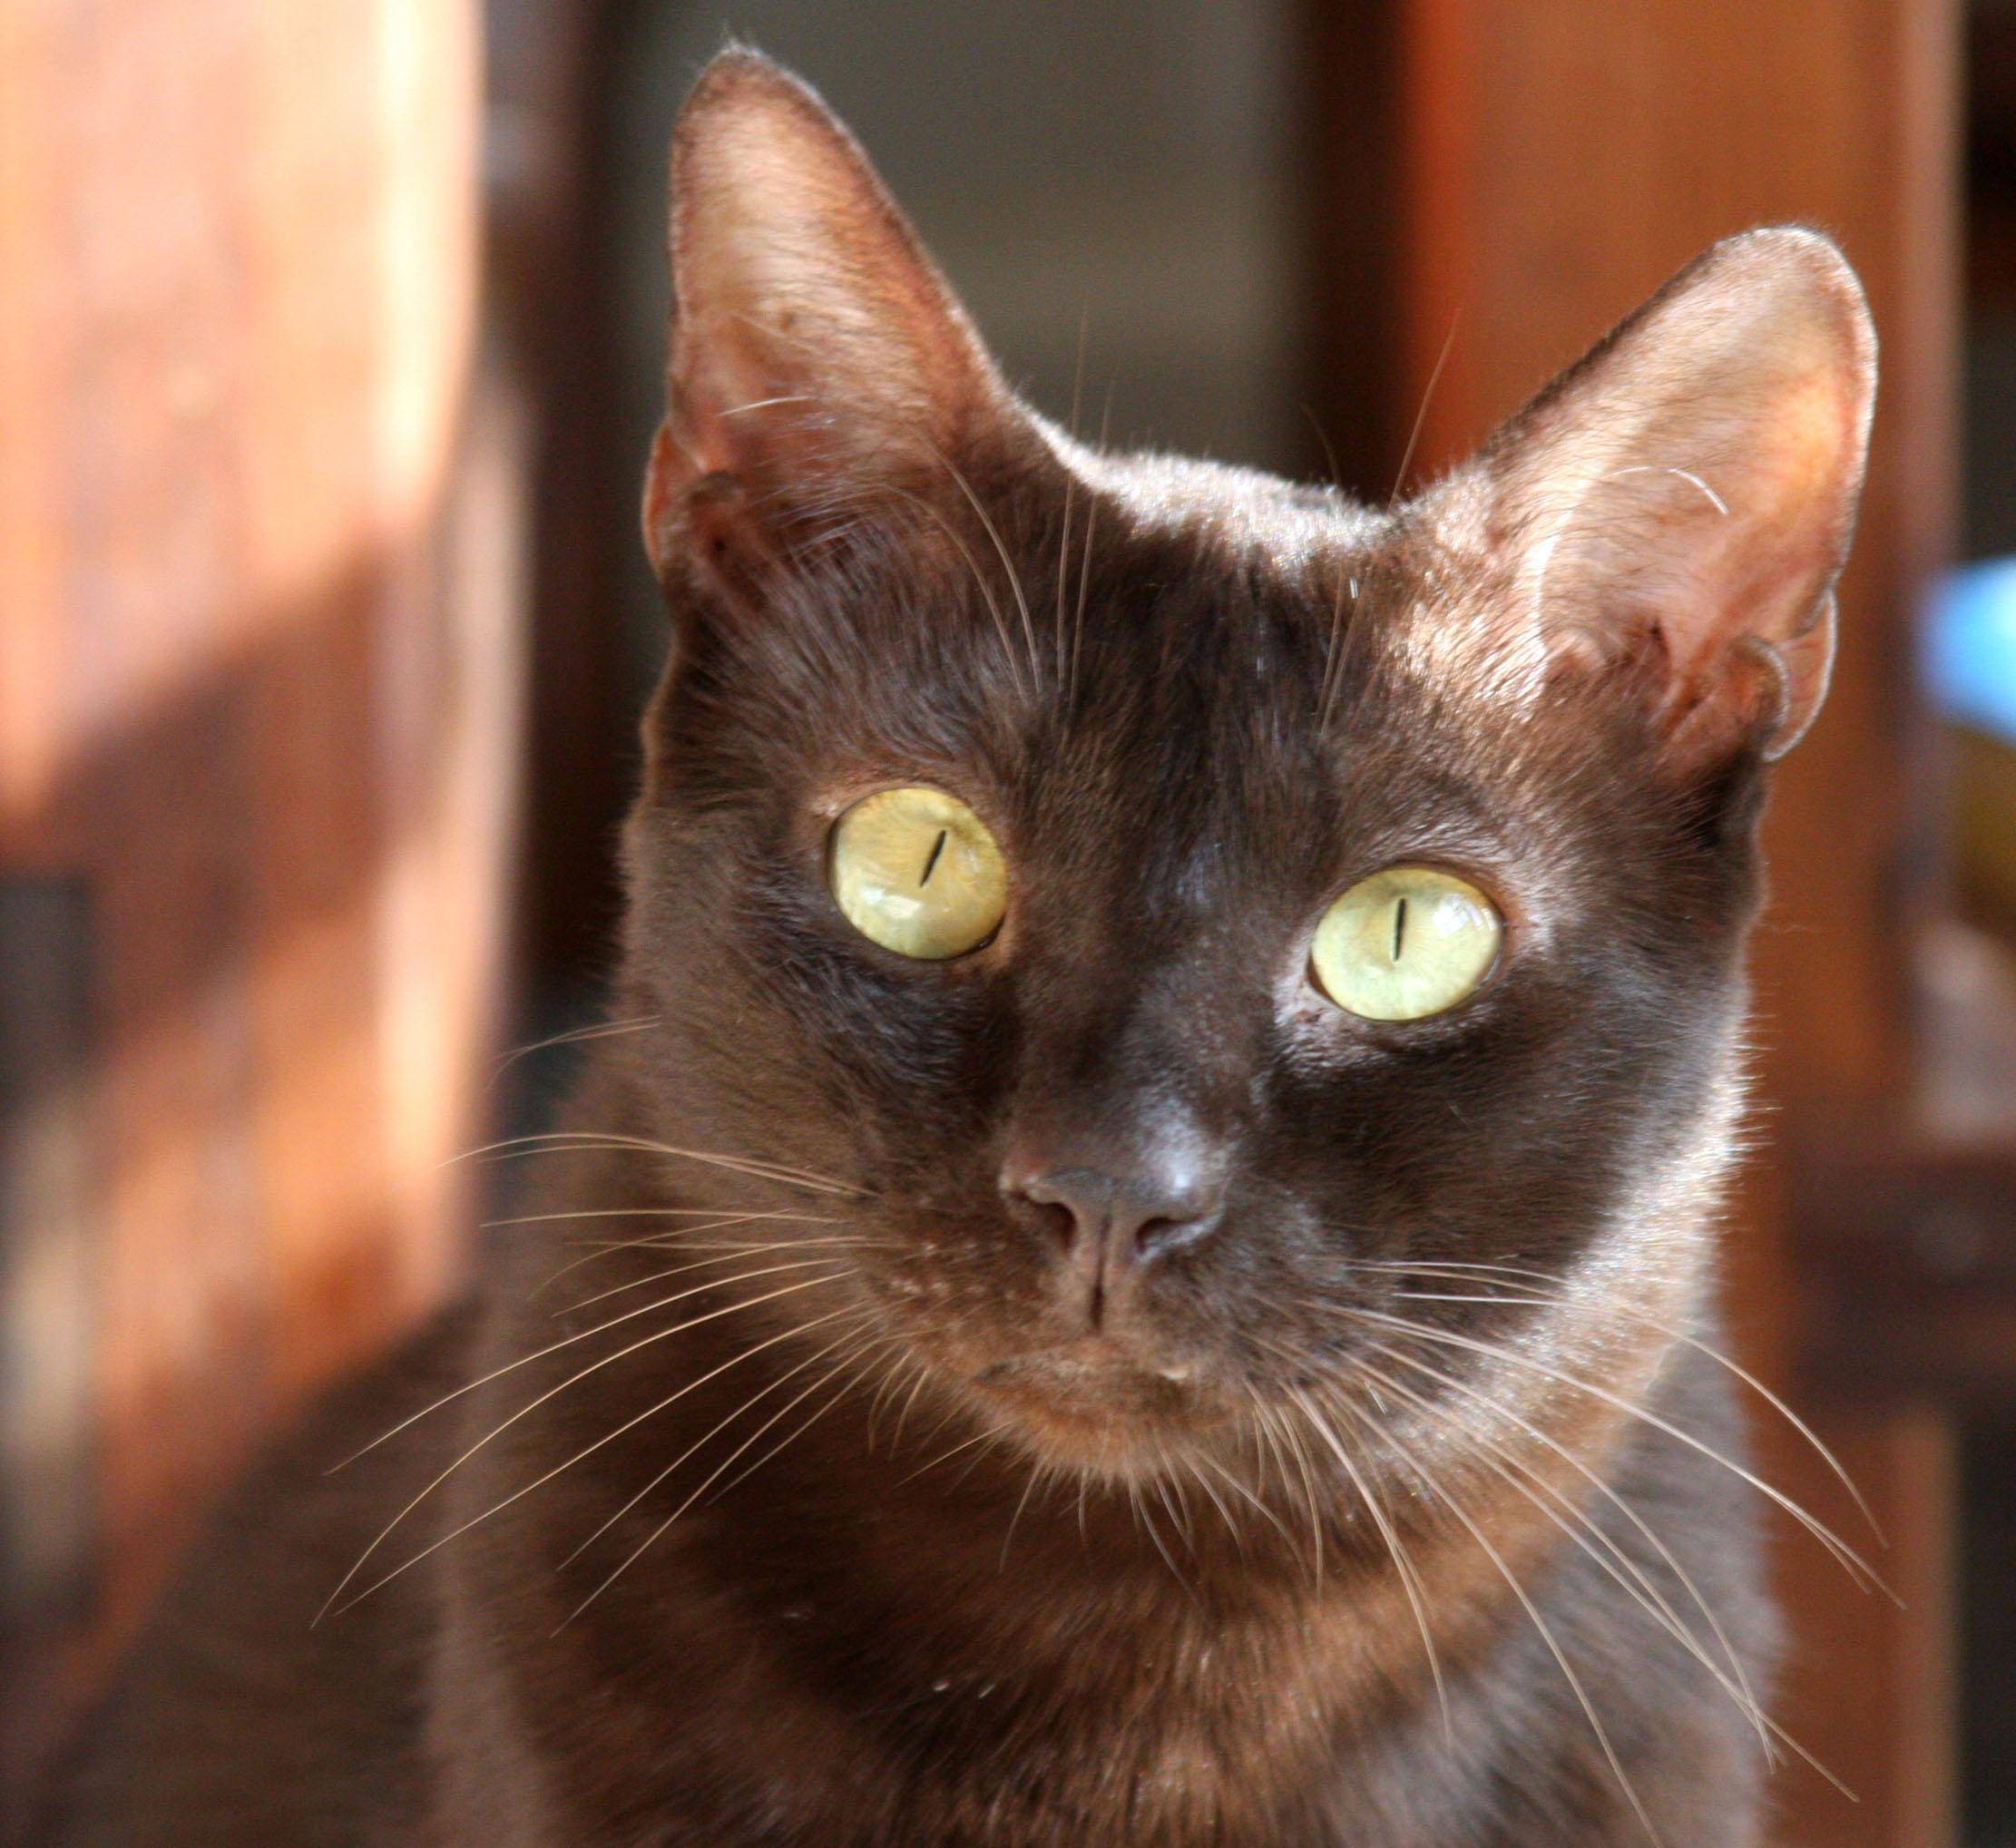 Кошка гавана: описание породы, характер, уход, стоимость